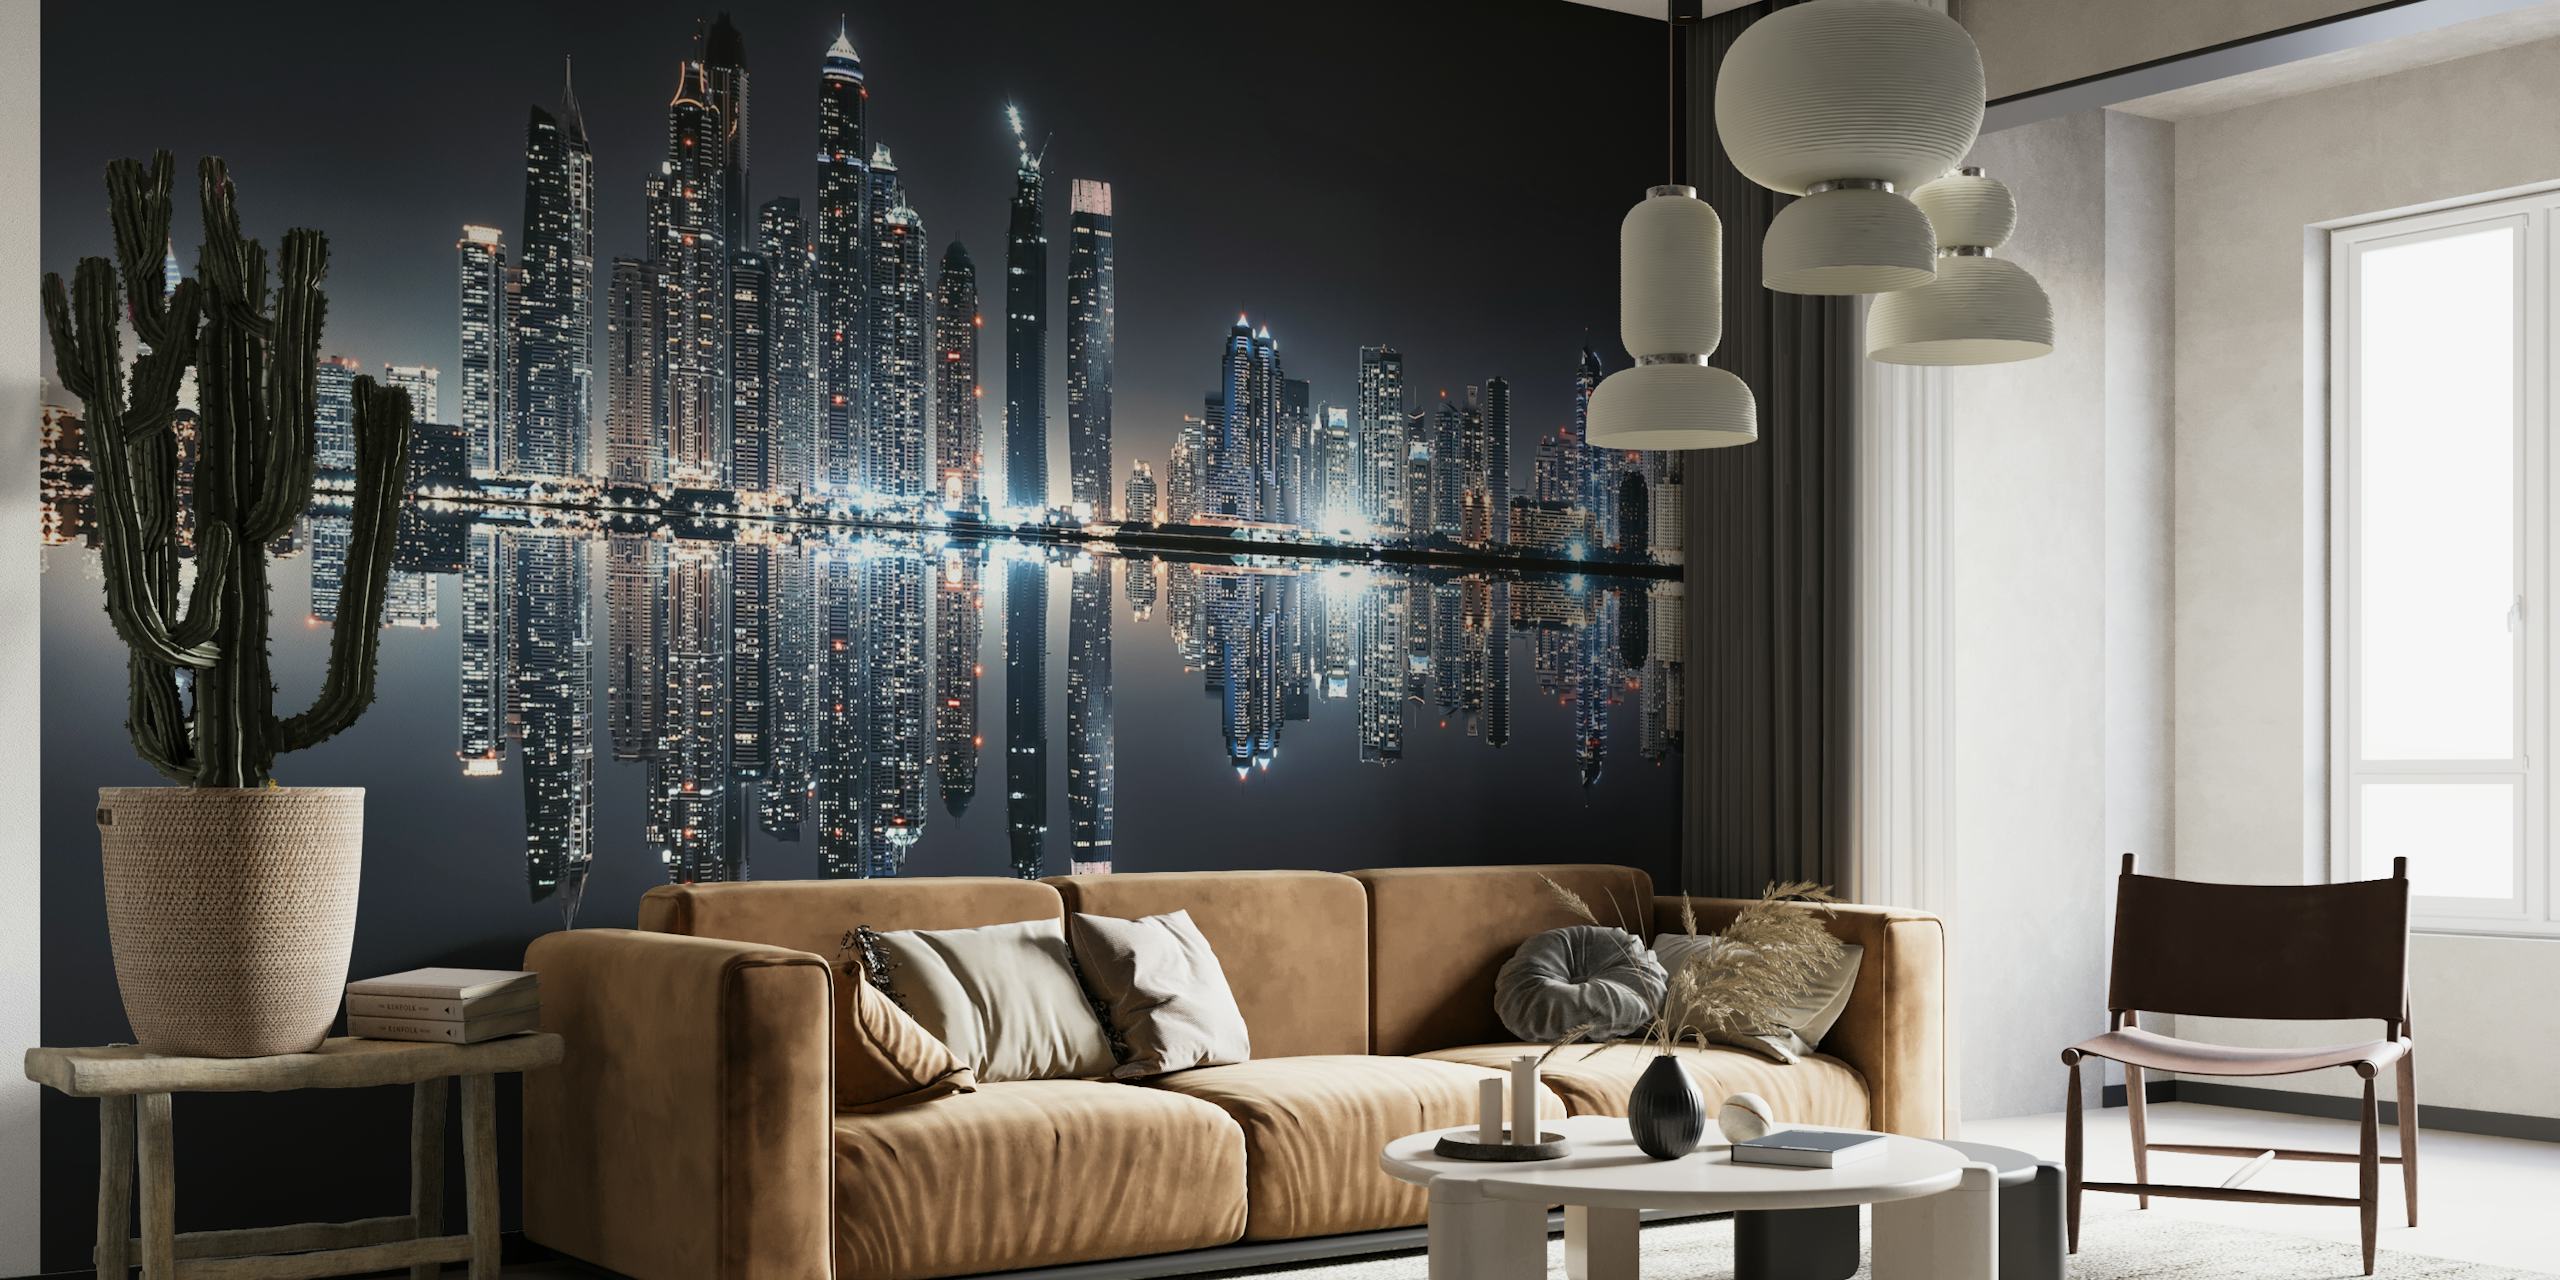 Mural del horizonte del puerto deportivo de Dubái con luces nocturnas de la ciudad reflejándose en el agua